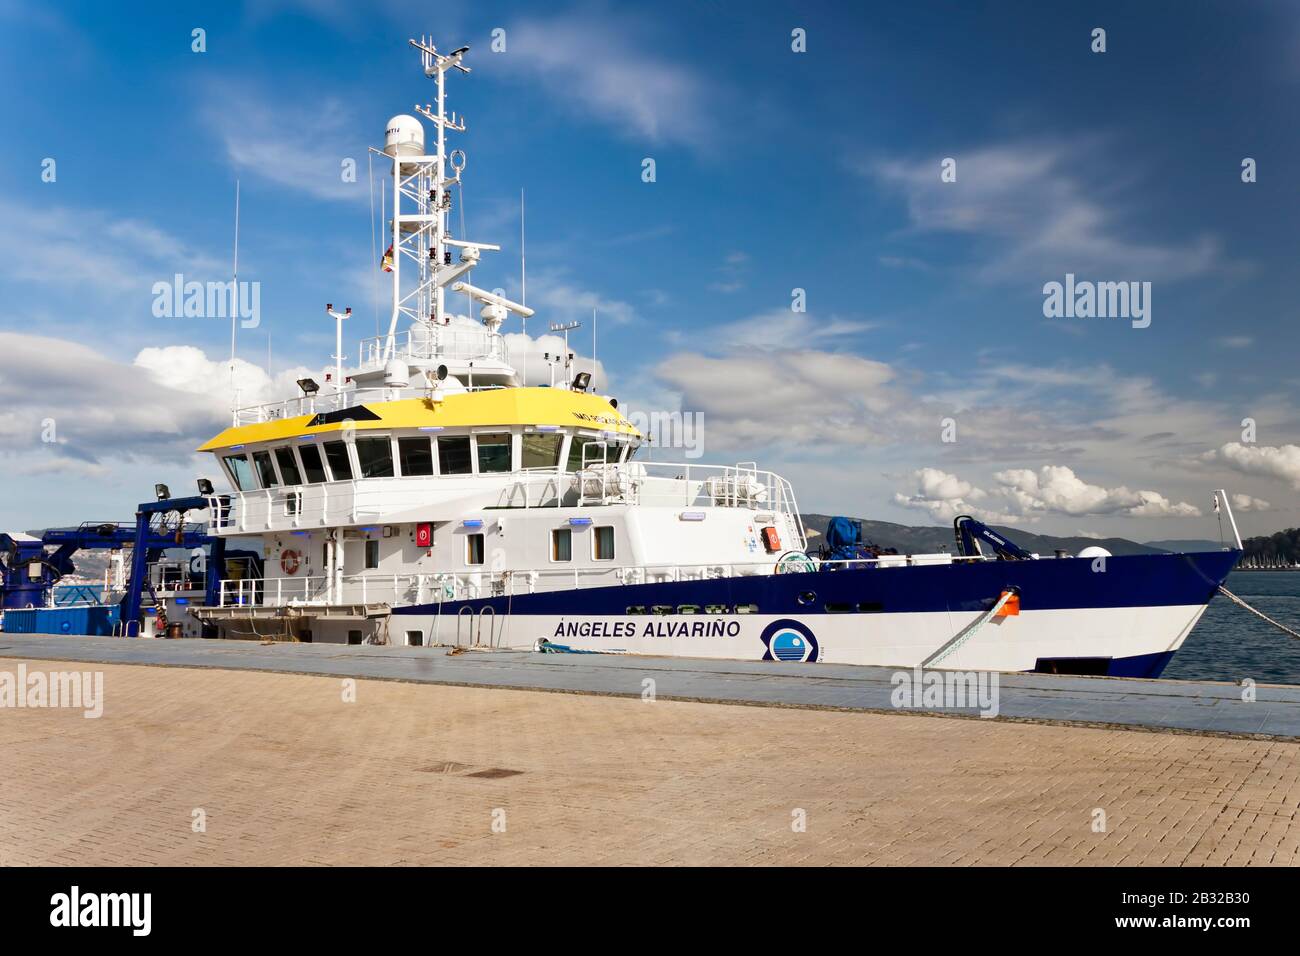 Vigo, Spanien - 24. Januar 2020: Das multifunktionale ozeanographische Forschungsschiff von Angeles Alvariño, das am 24. Januar 2020 in Vigo, Pontevedr, im Hafen festgemacht wurde Stockfoto